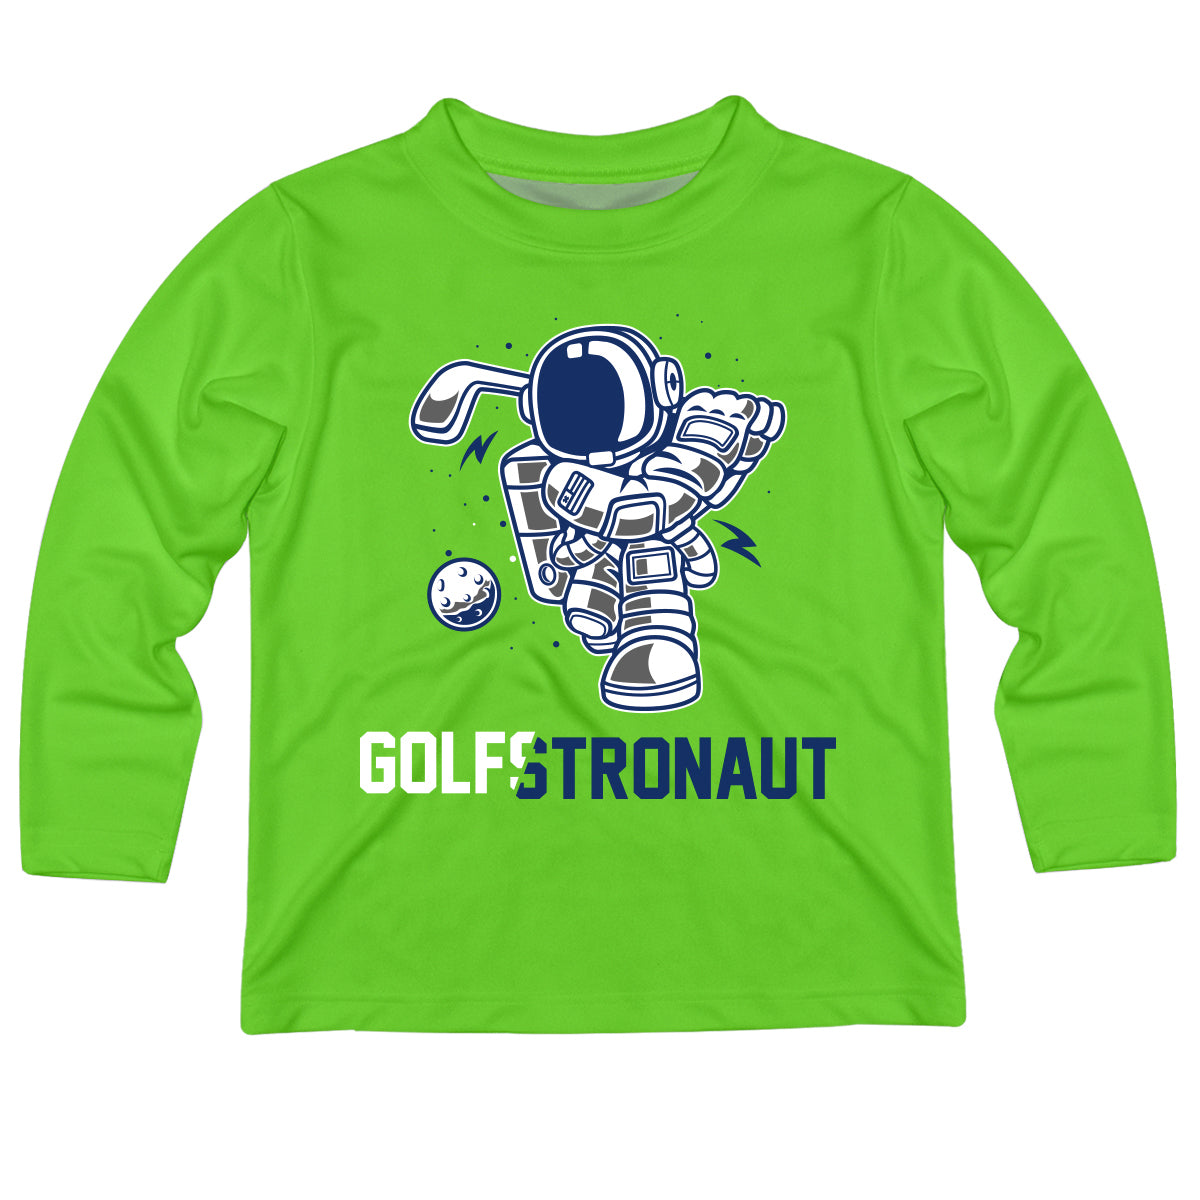 Golfstronaut Green Long Sleeve Boys Tee Shirt